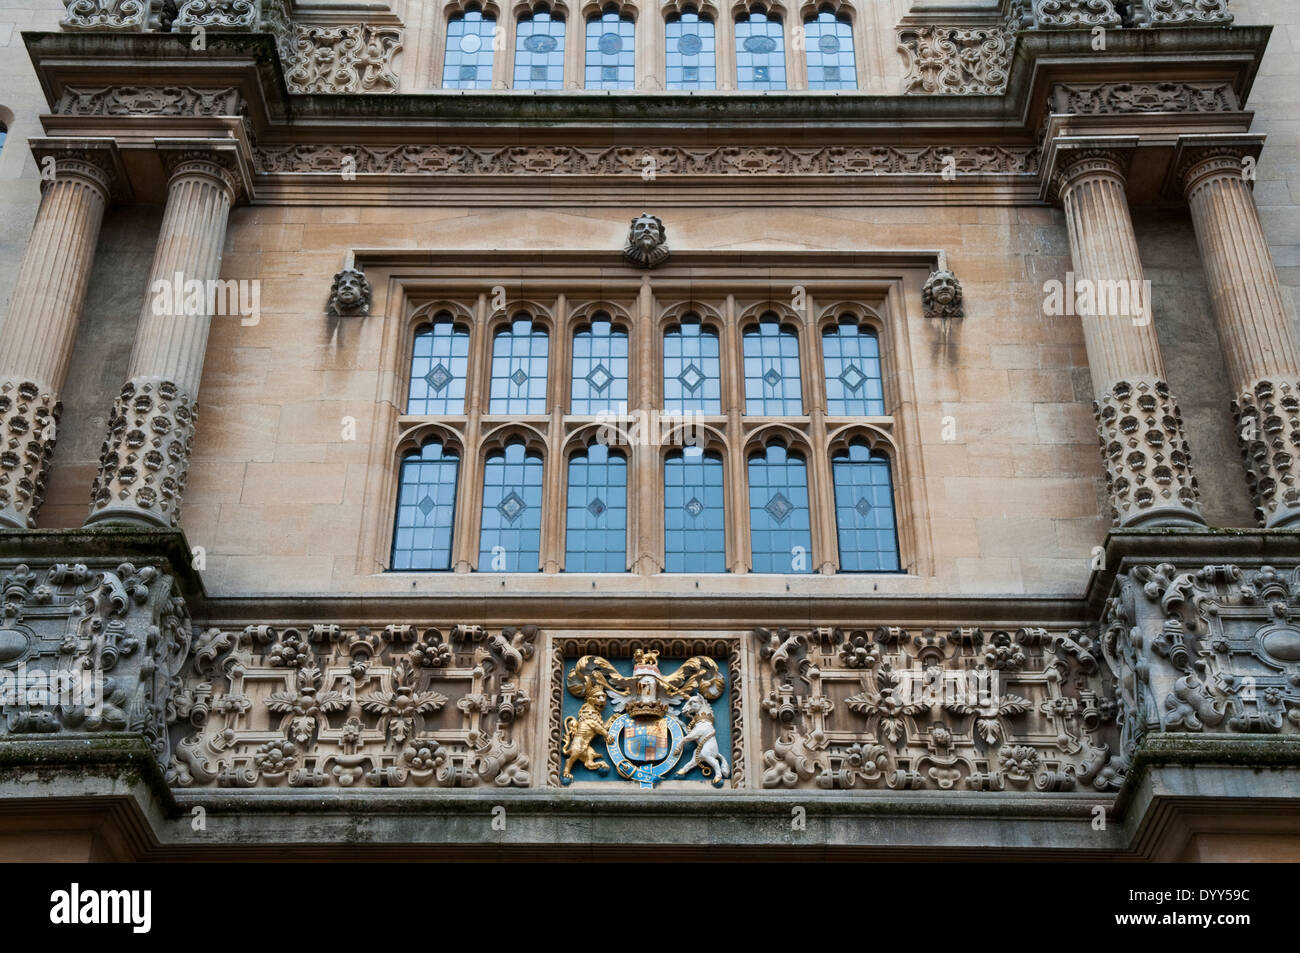 Détail de la tour des cinq ordres dans le quadrangle d'écoles à la Bodleian Library, Oxford University Banque D'Images